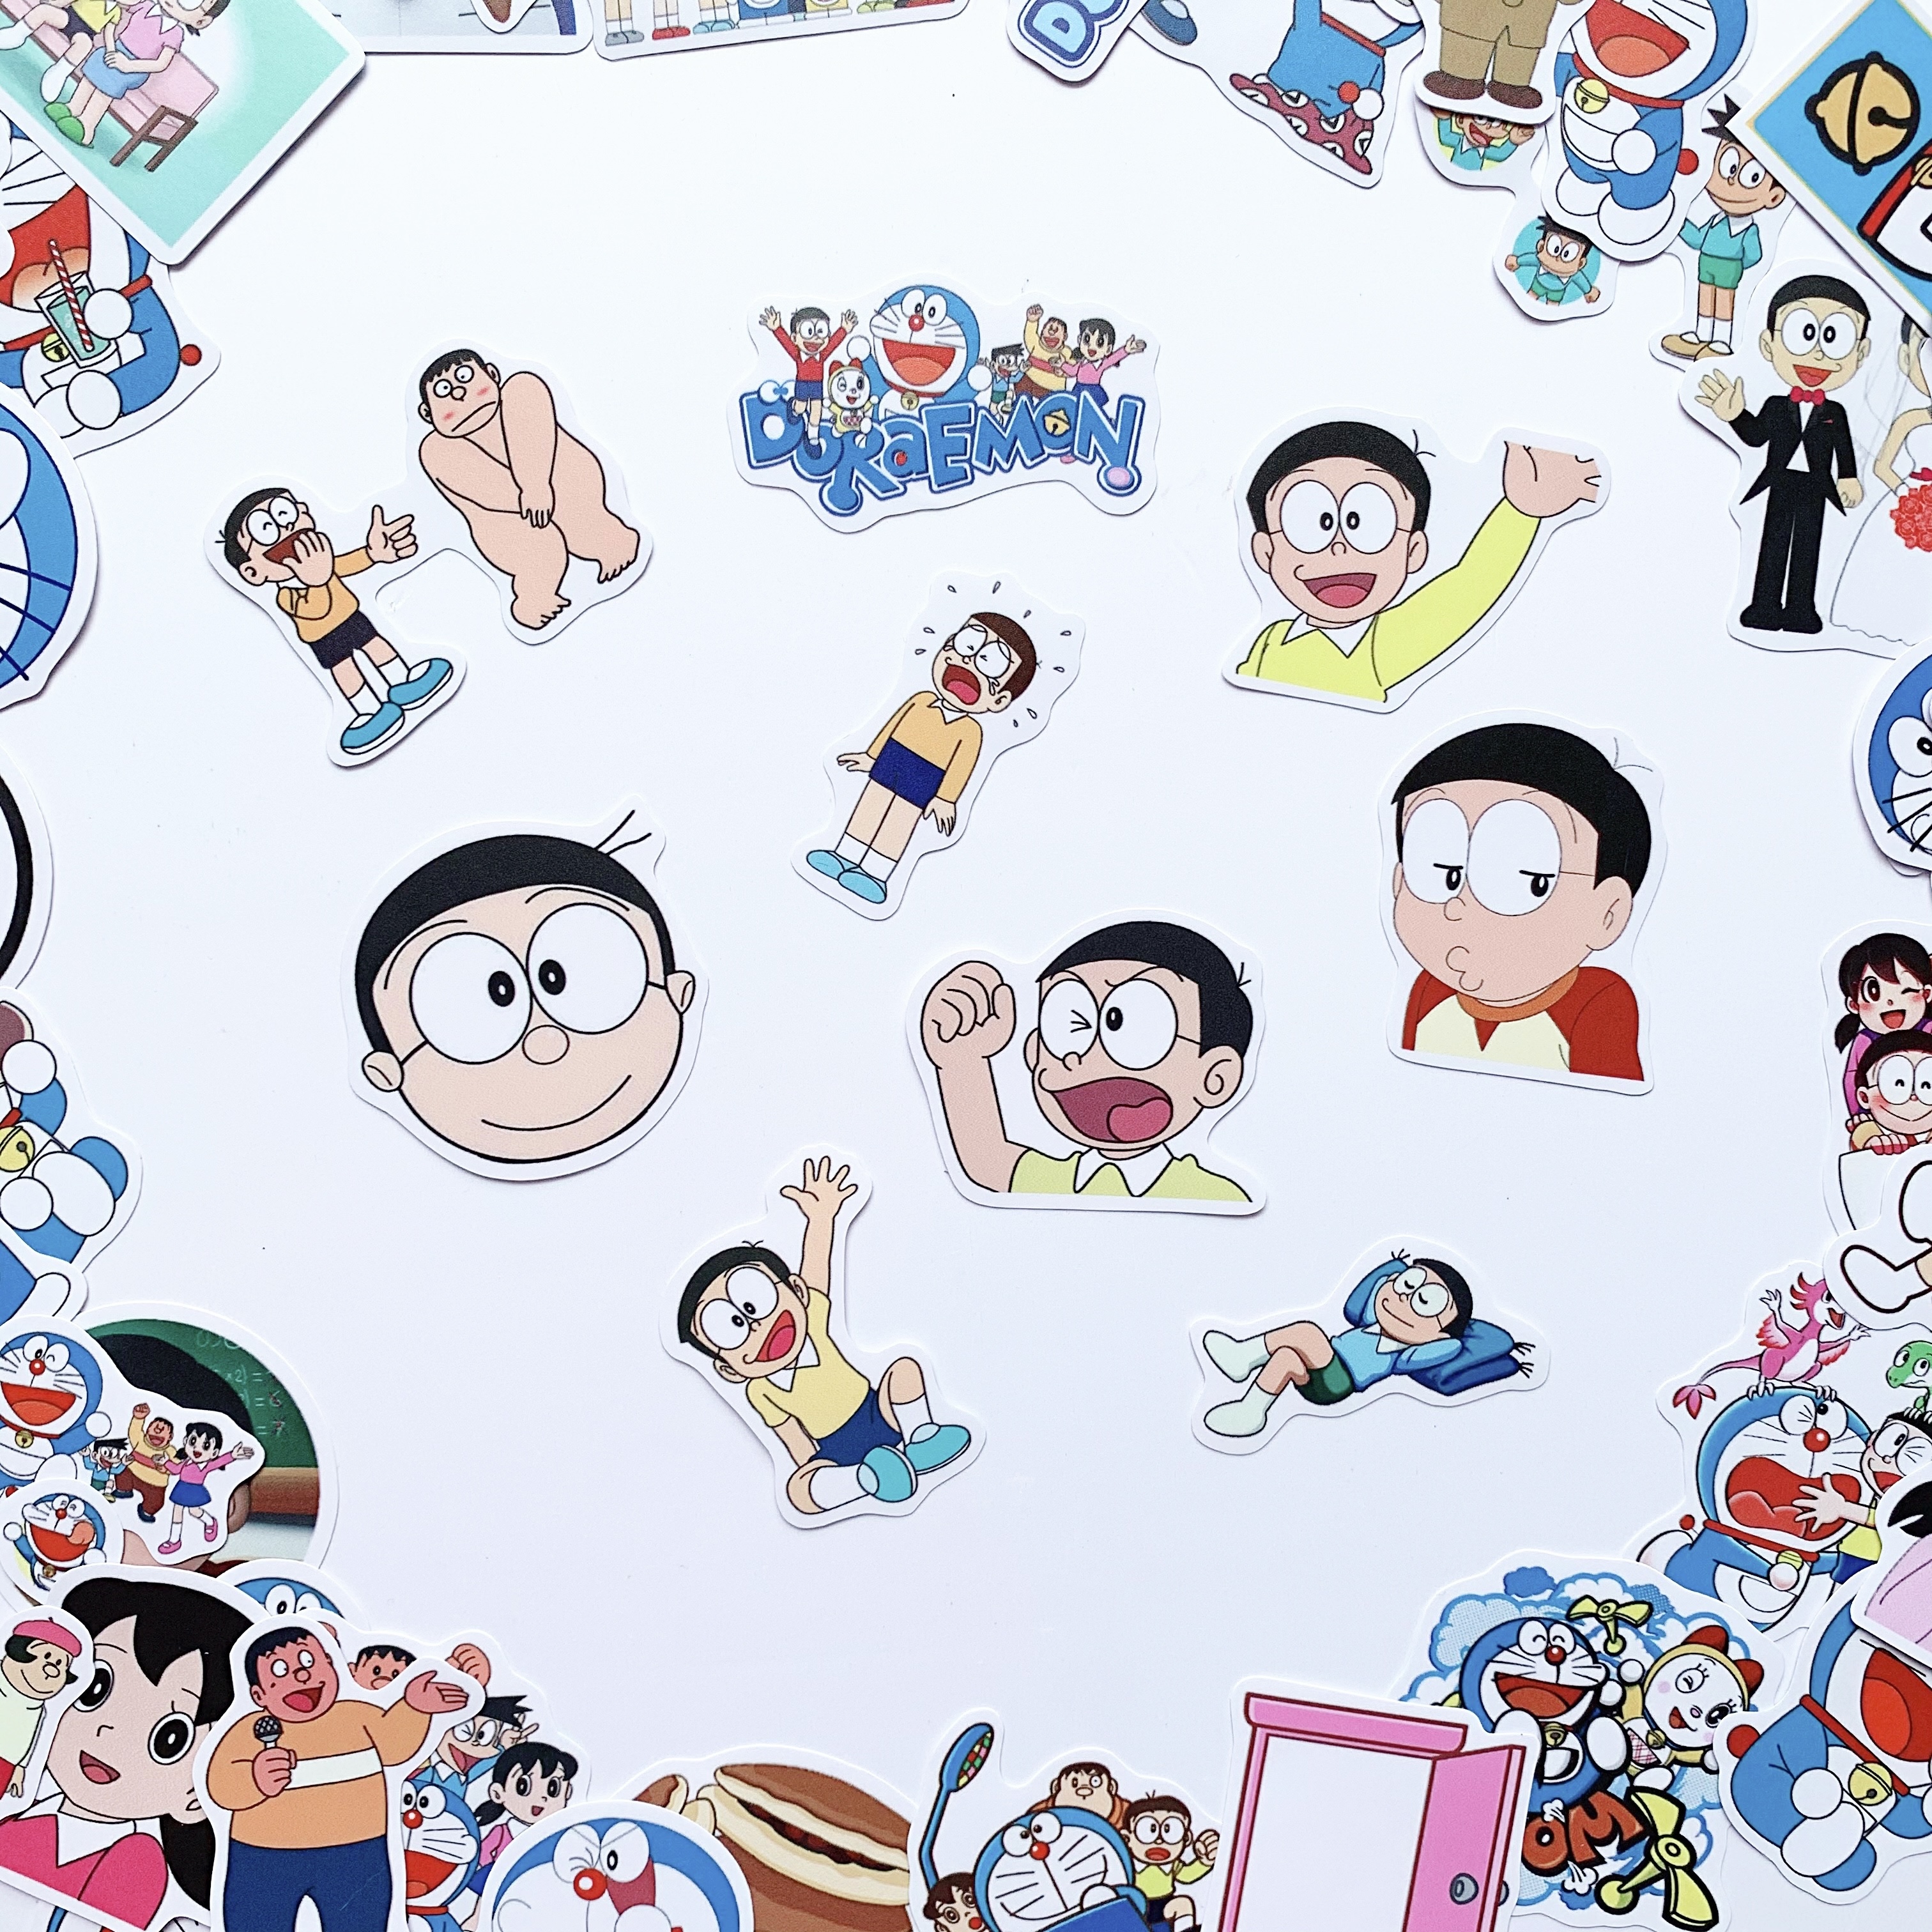 Nobita - Doraemon và những người bạn Sticker ngẫu nhiên  - Chất liệu PVC chất lượng cao chống nước - Kích thước 4-8cm